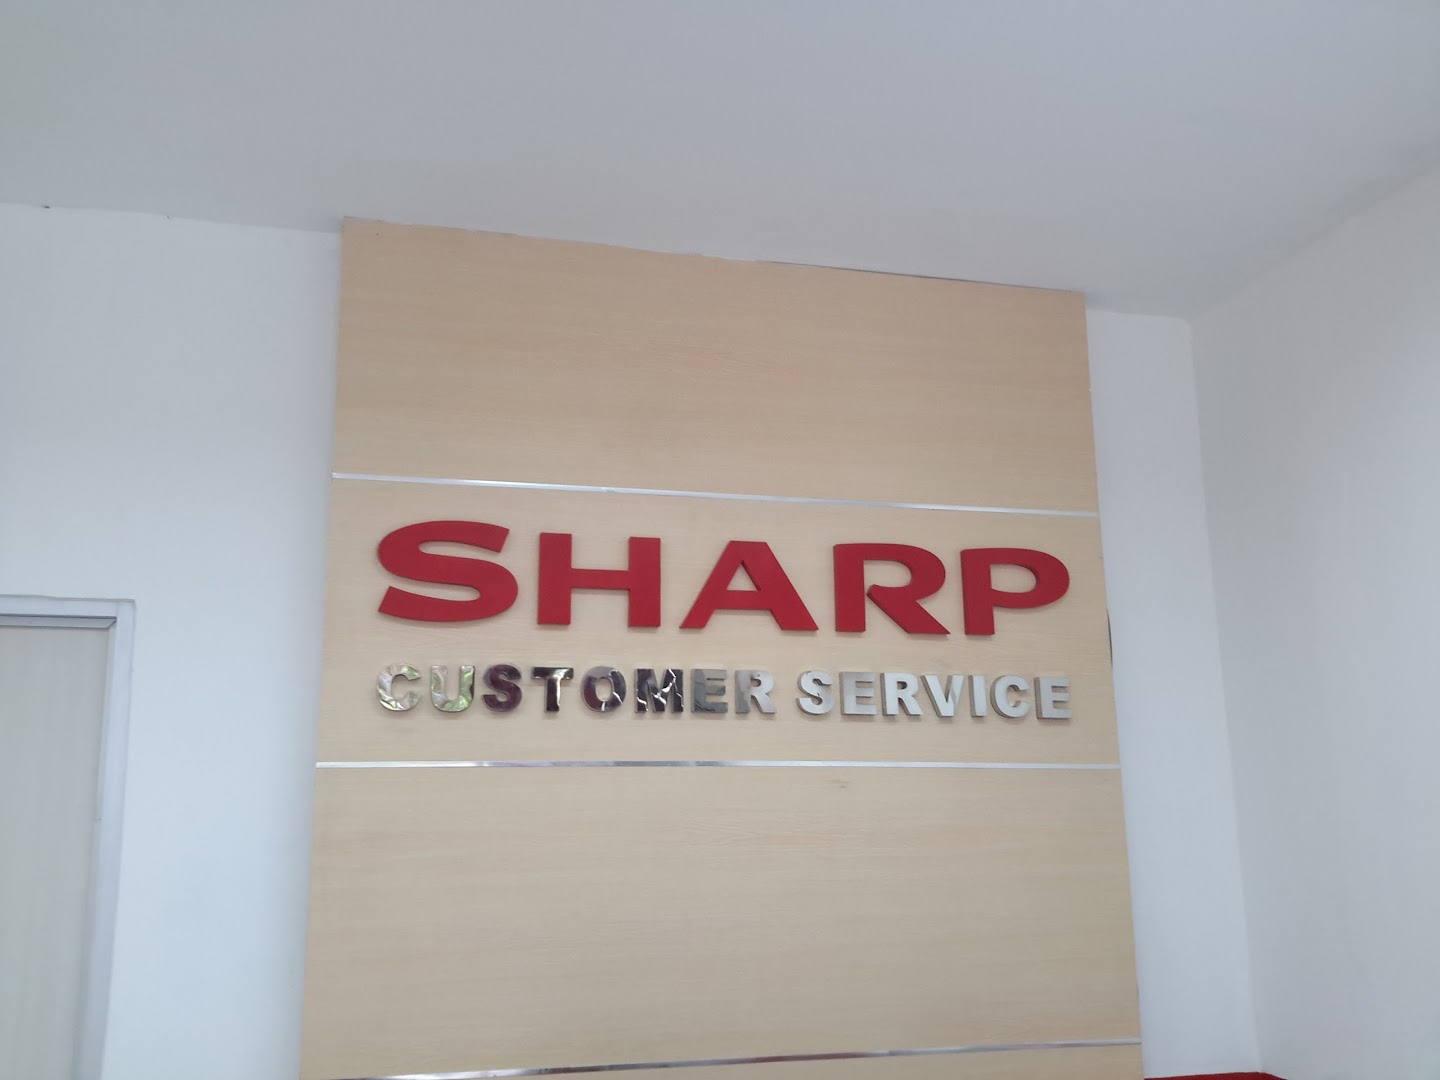 Gambar Sharp Electronics Indonesia. Pt